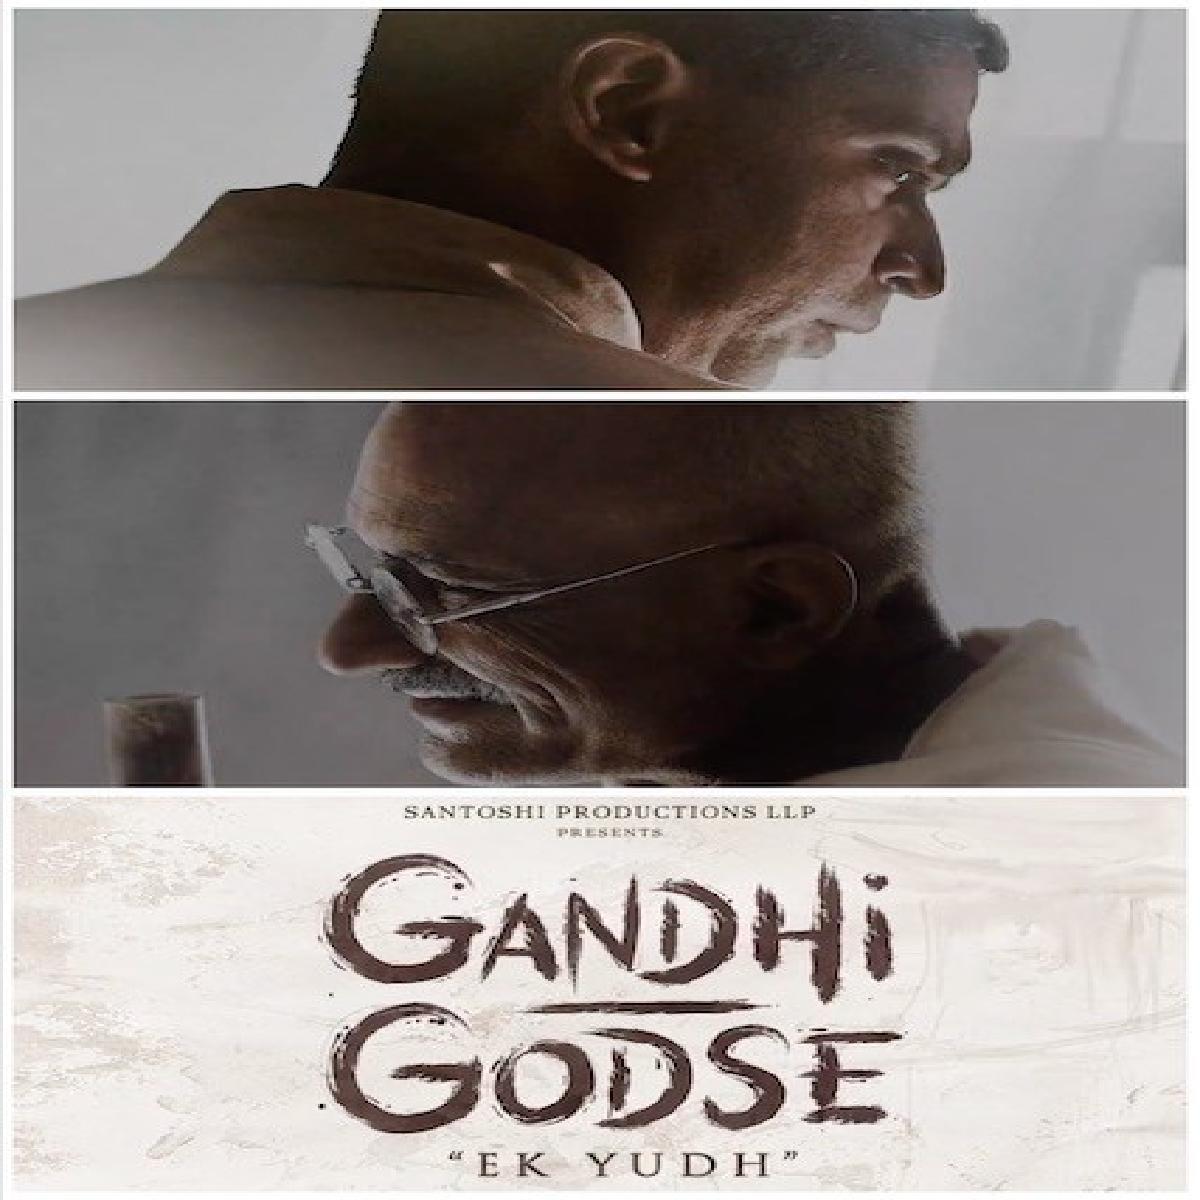 Gandhi Godse Ek Yudh First Look Is Out